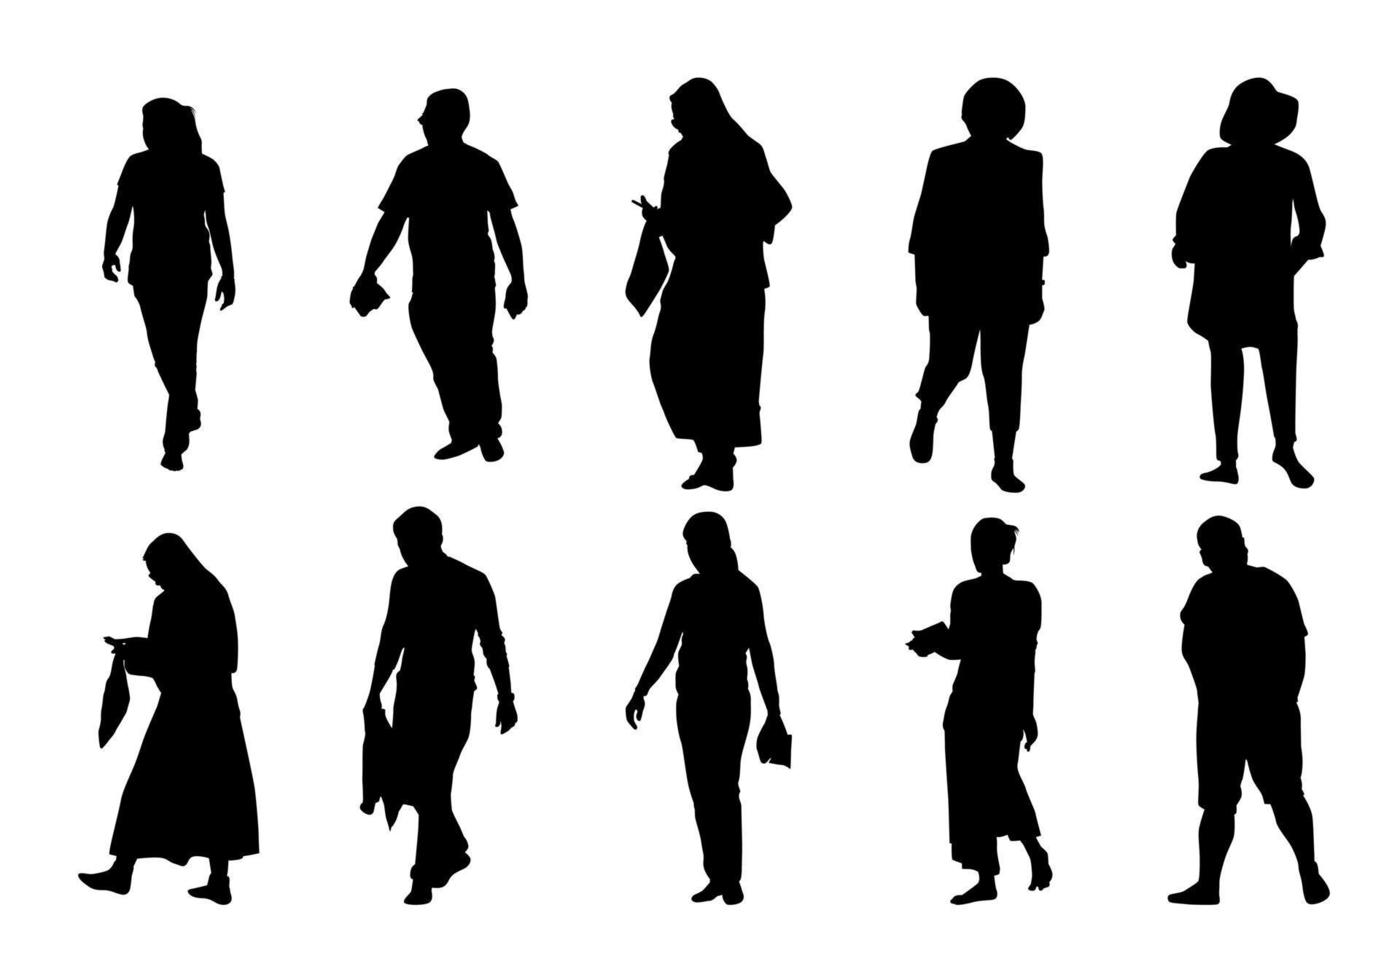 människor silhouette walking set, grupp skugga olika män och kvinnor vektor